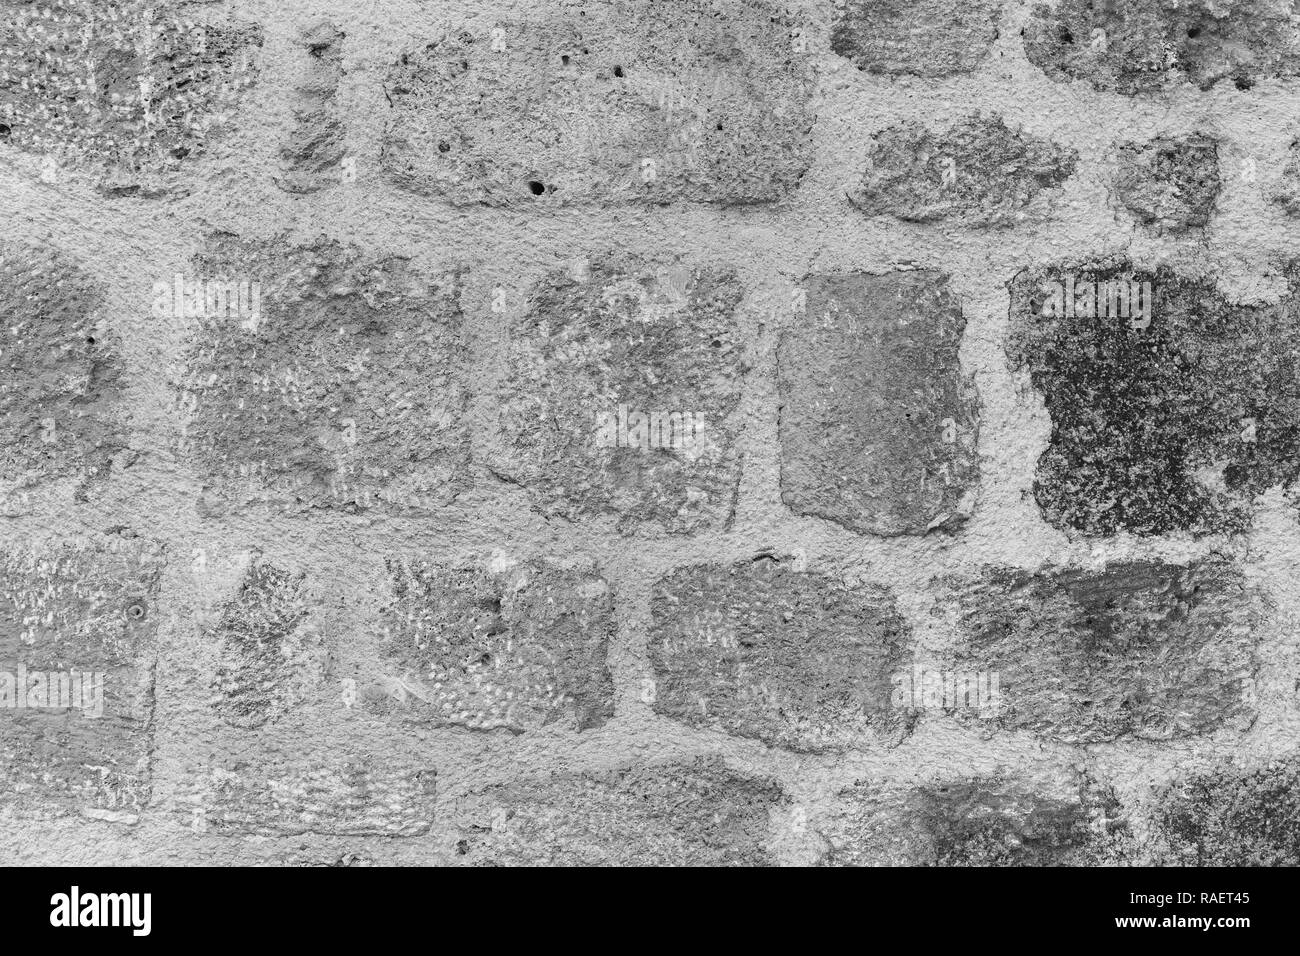 La texture di vintage vecchia parete spiovente della casa fuori. Abstract background. Posizione orizzontale la fotografia in bianco e nero. Foto Stock